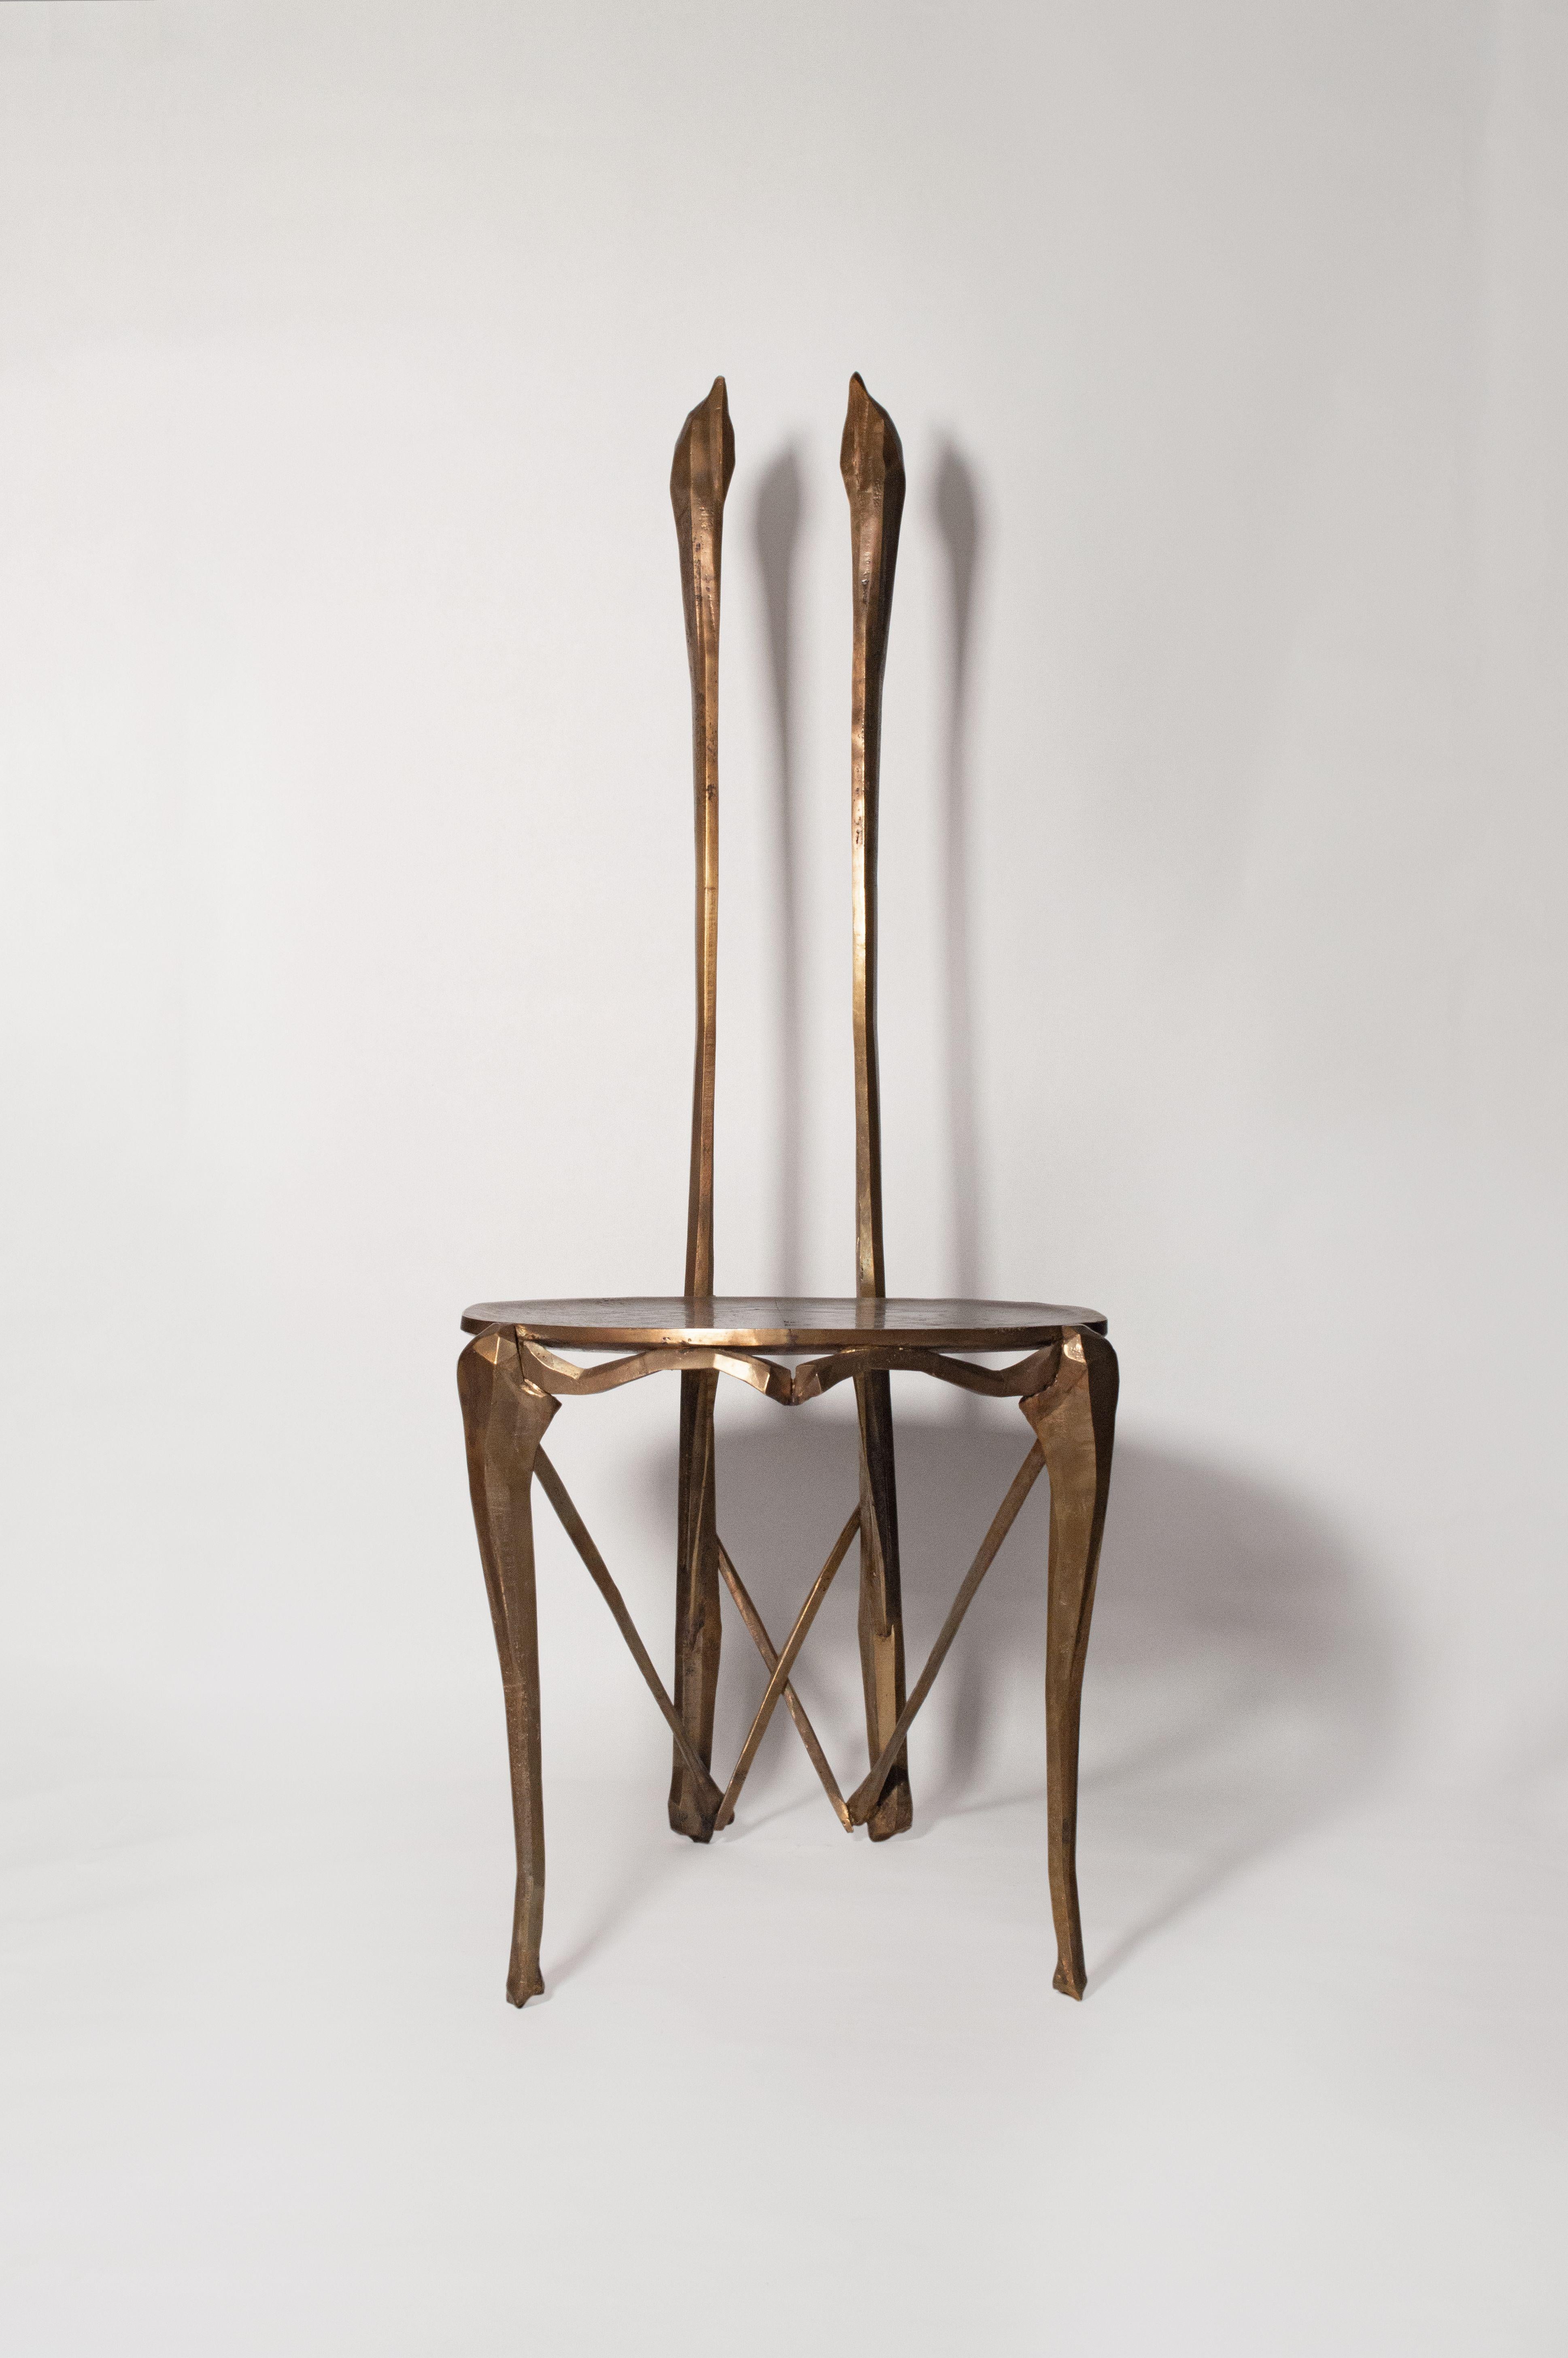 Skulpturaler Stuhl Ignis Ossium von Acoocooro
Abmessungen: B 46 x T 56 x H 115 cm, Sitzhöhe 45 cm.
MATERIALIEN: Sandgegossene Bronze.
Verschiedene Ausführungen verfügbar. 

Alle unsere Lampen können je nach Land verkabelt werden. Wenn es in die